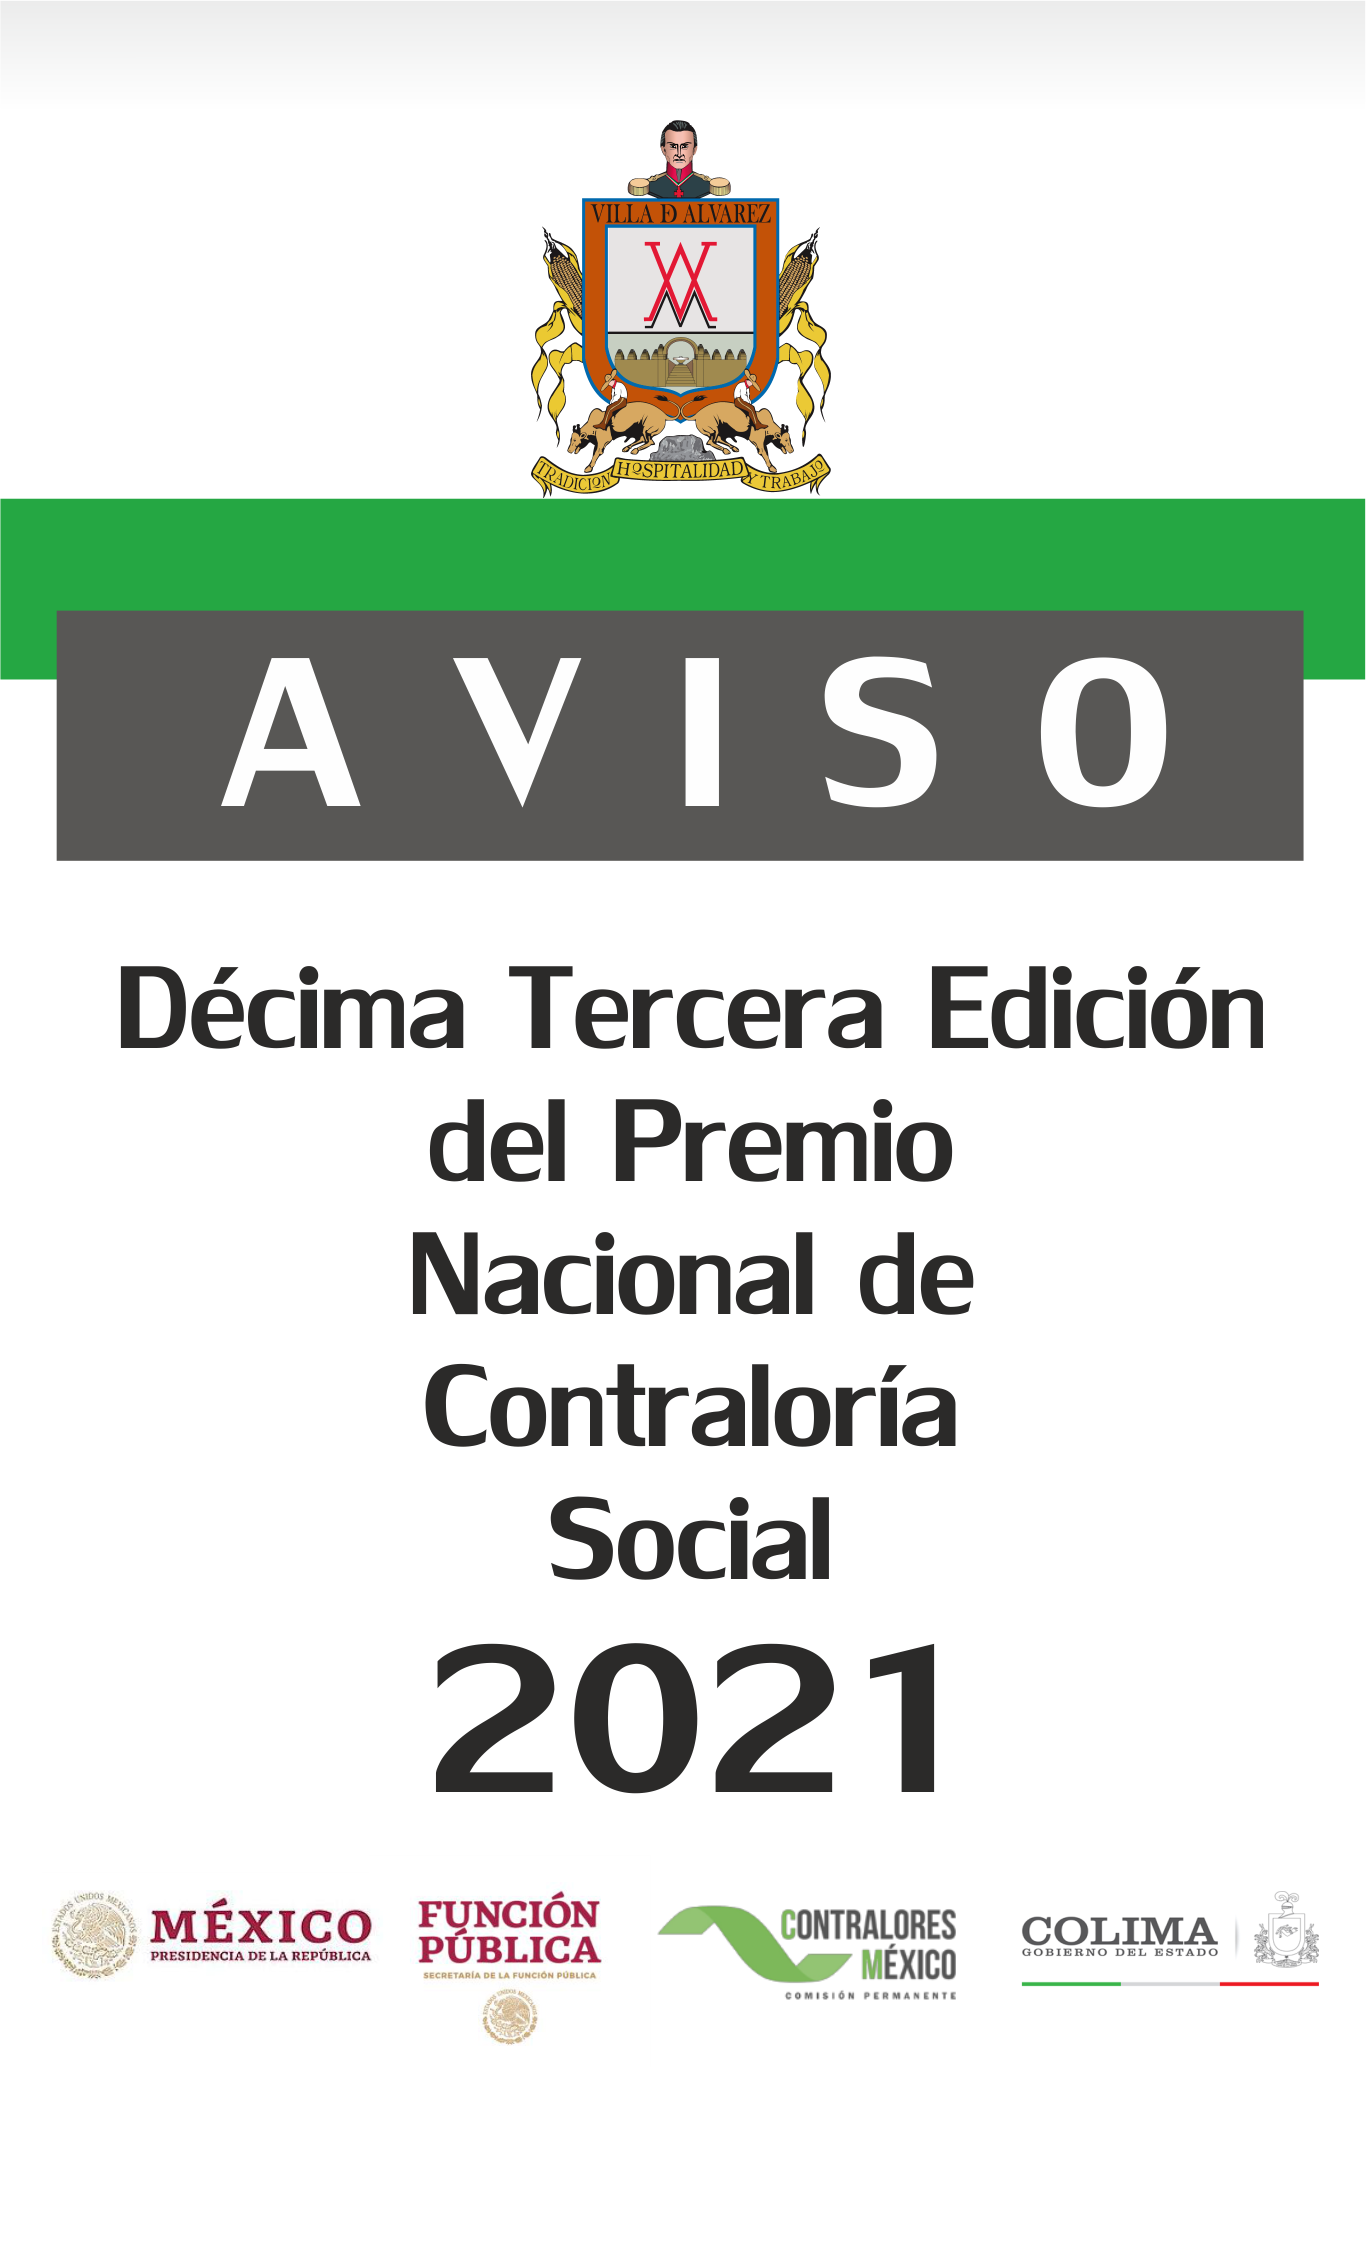 Convocatoria: DÉCIMA TERCERA EDICIÓN DEL PREMIO NACIONAL DE CONTRALORÍA SOCIAL 2021